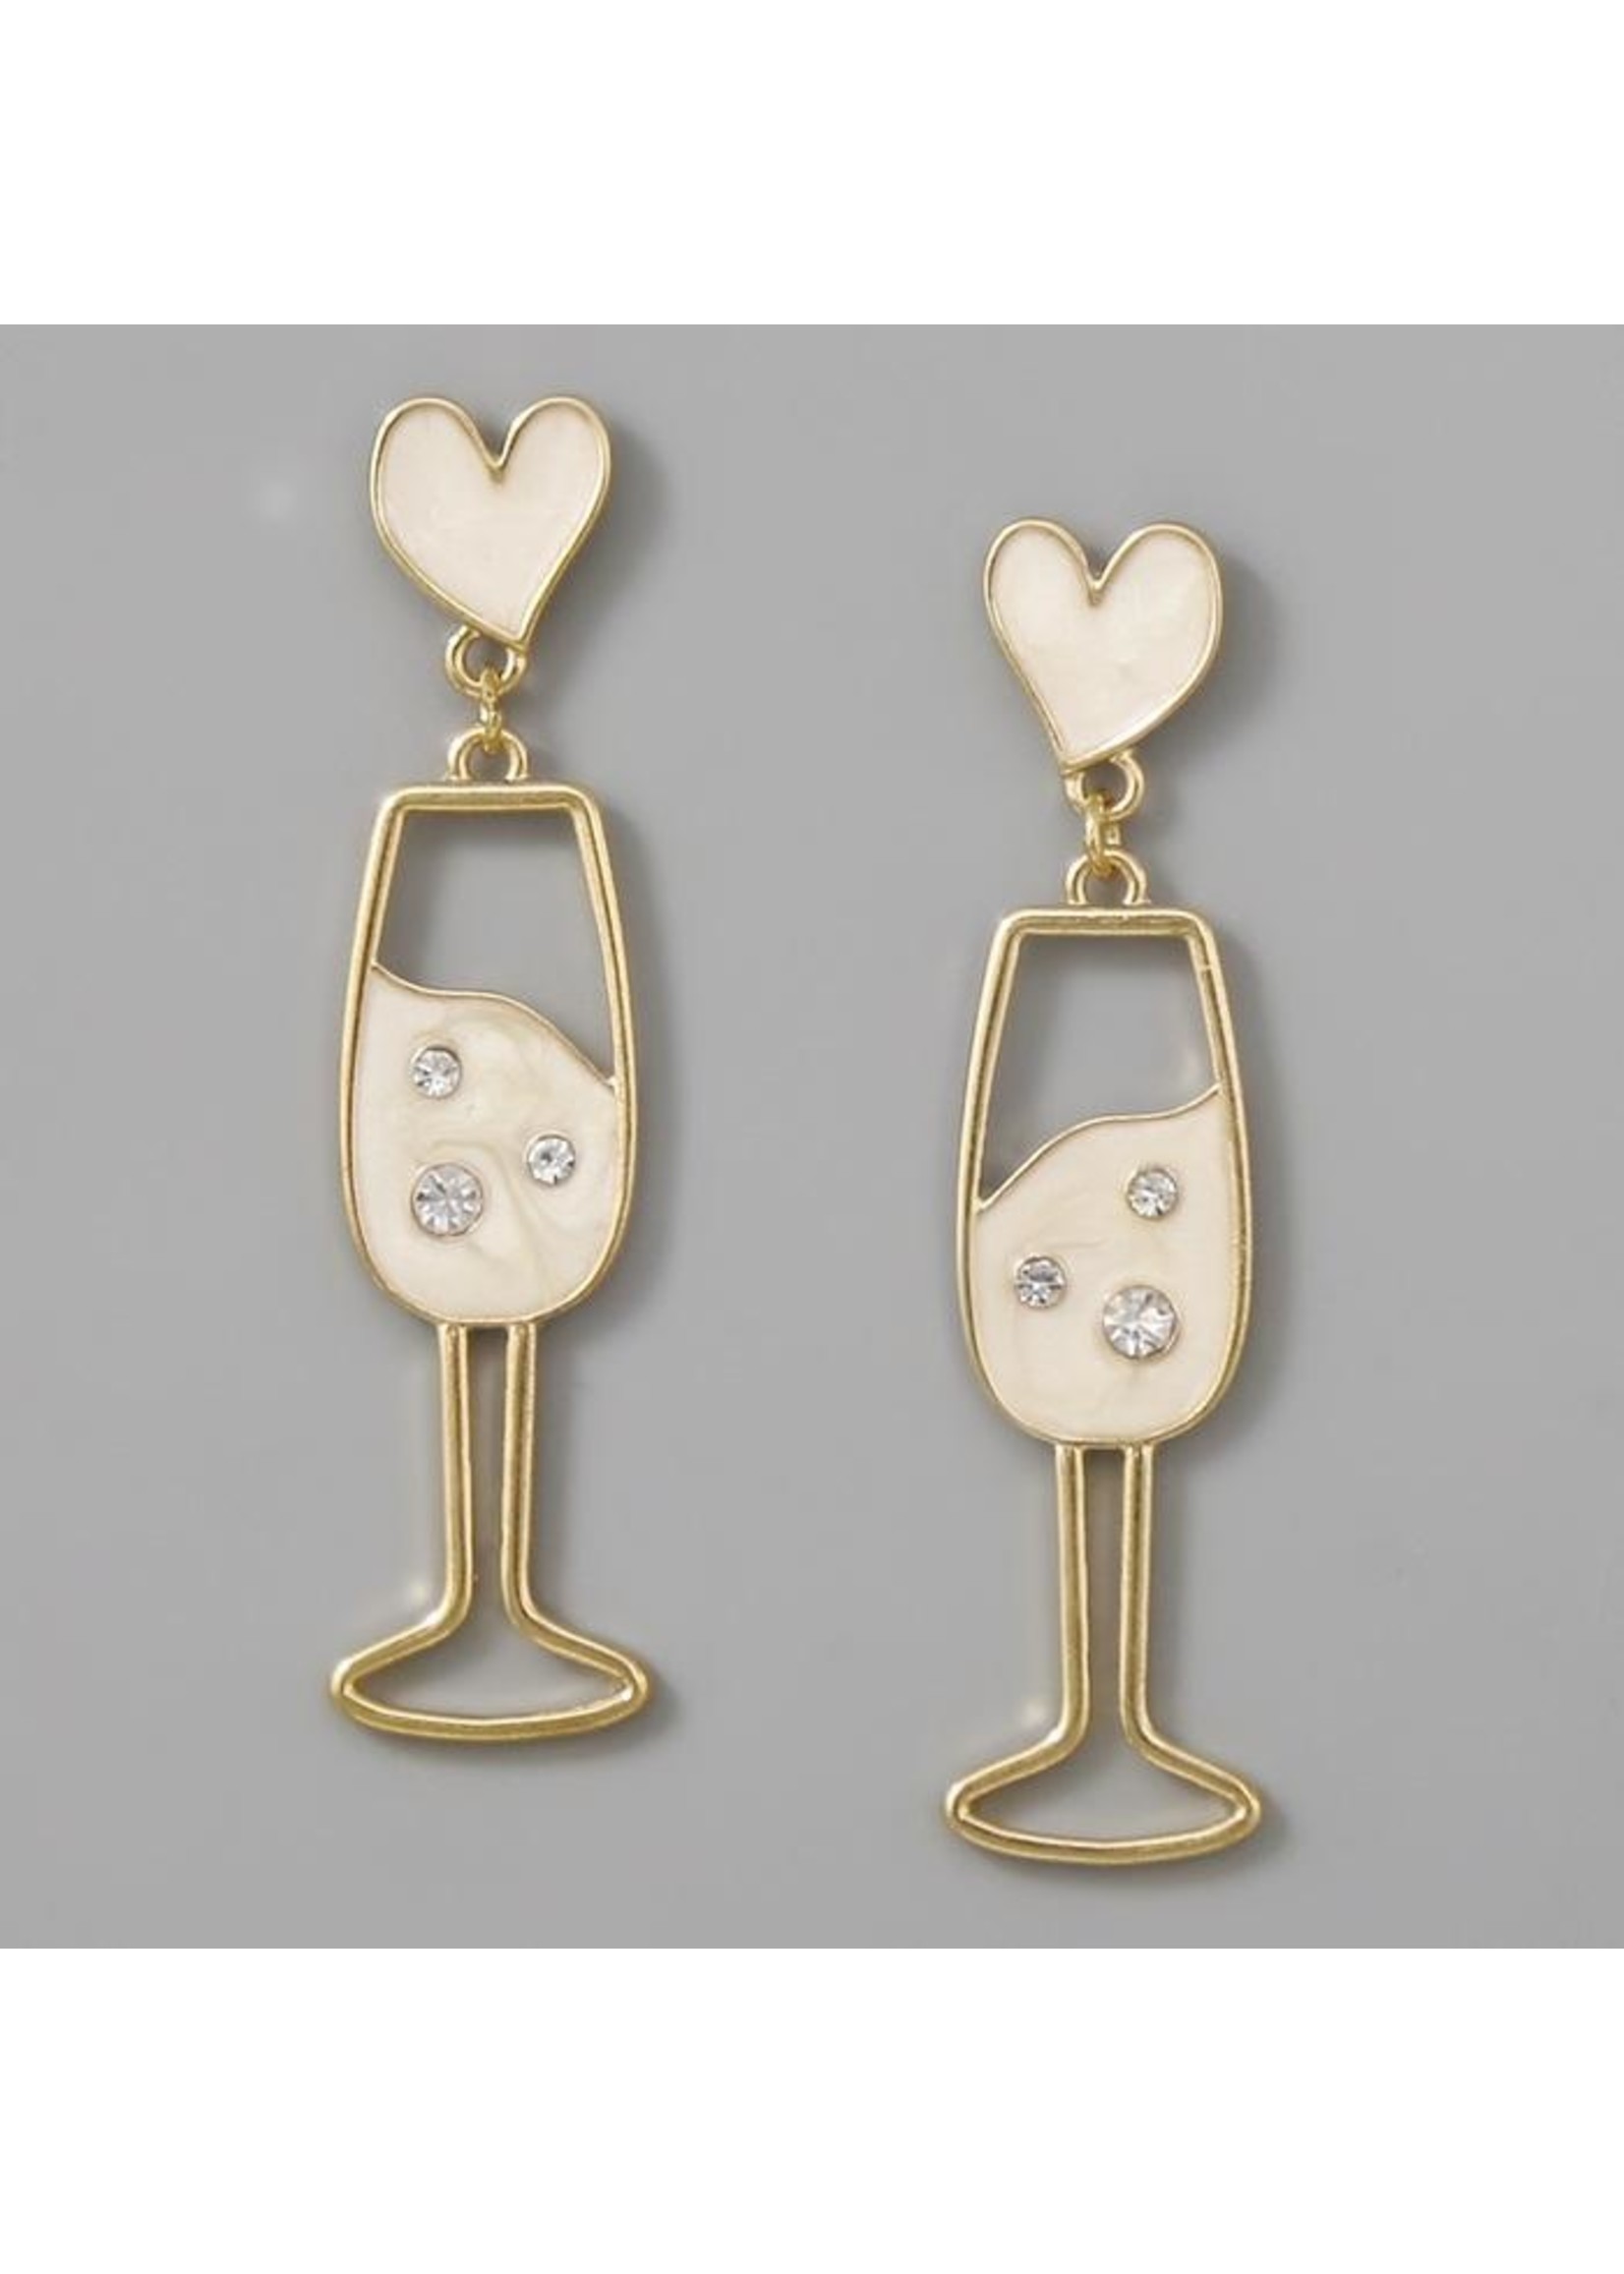 Champagne Glass Earrings w Hearts